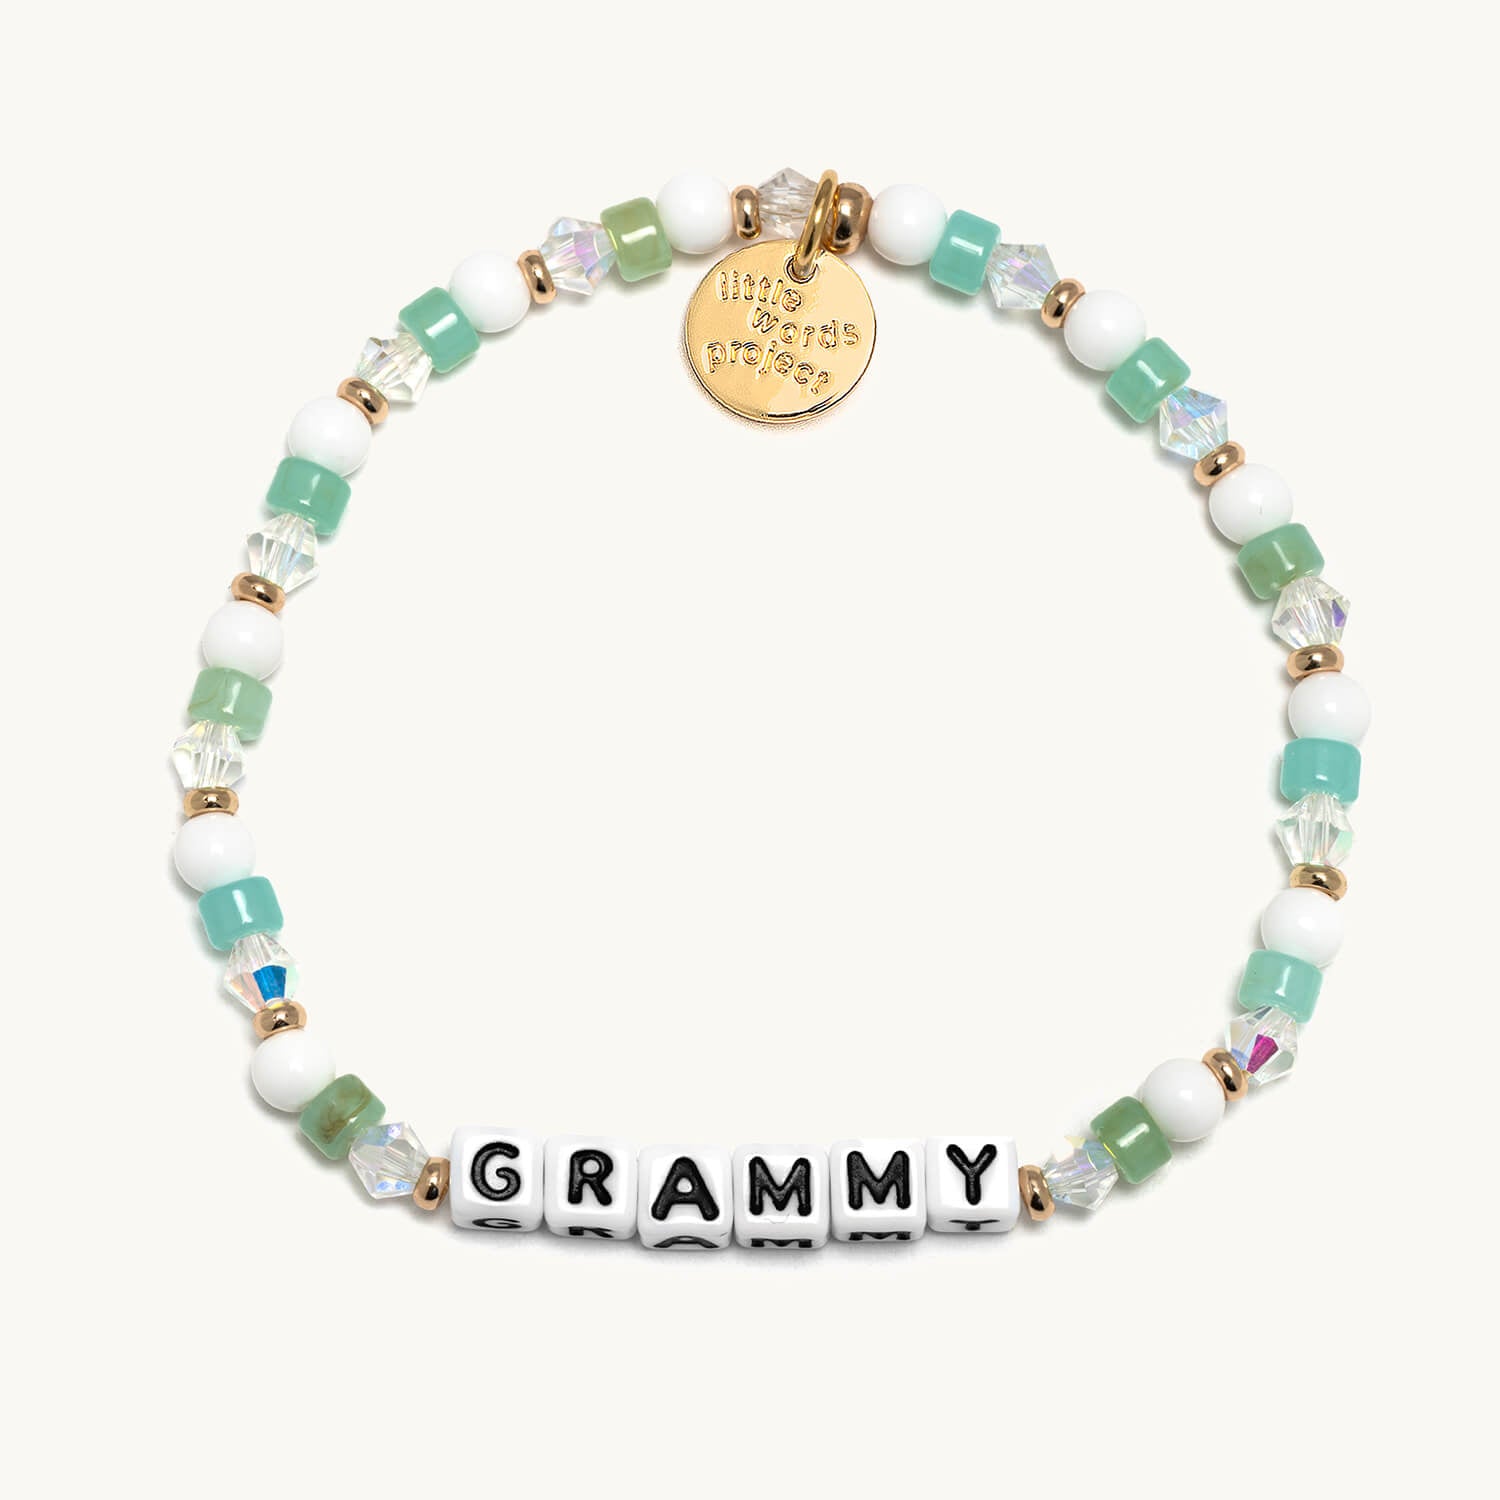 Grammy- Mother's Day Bracelet